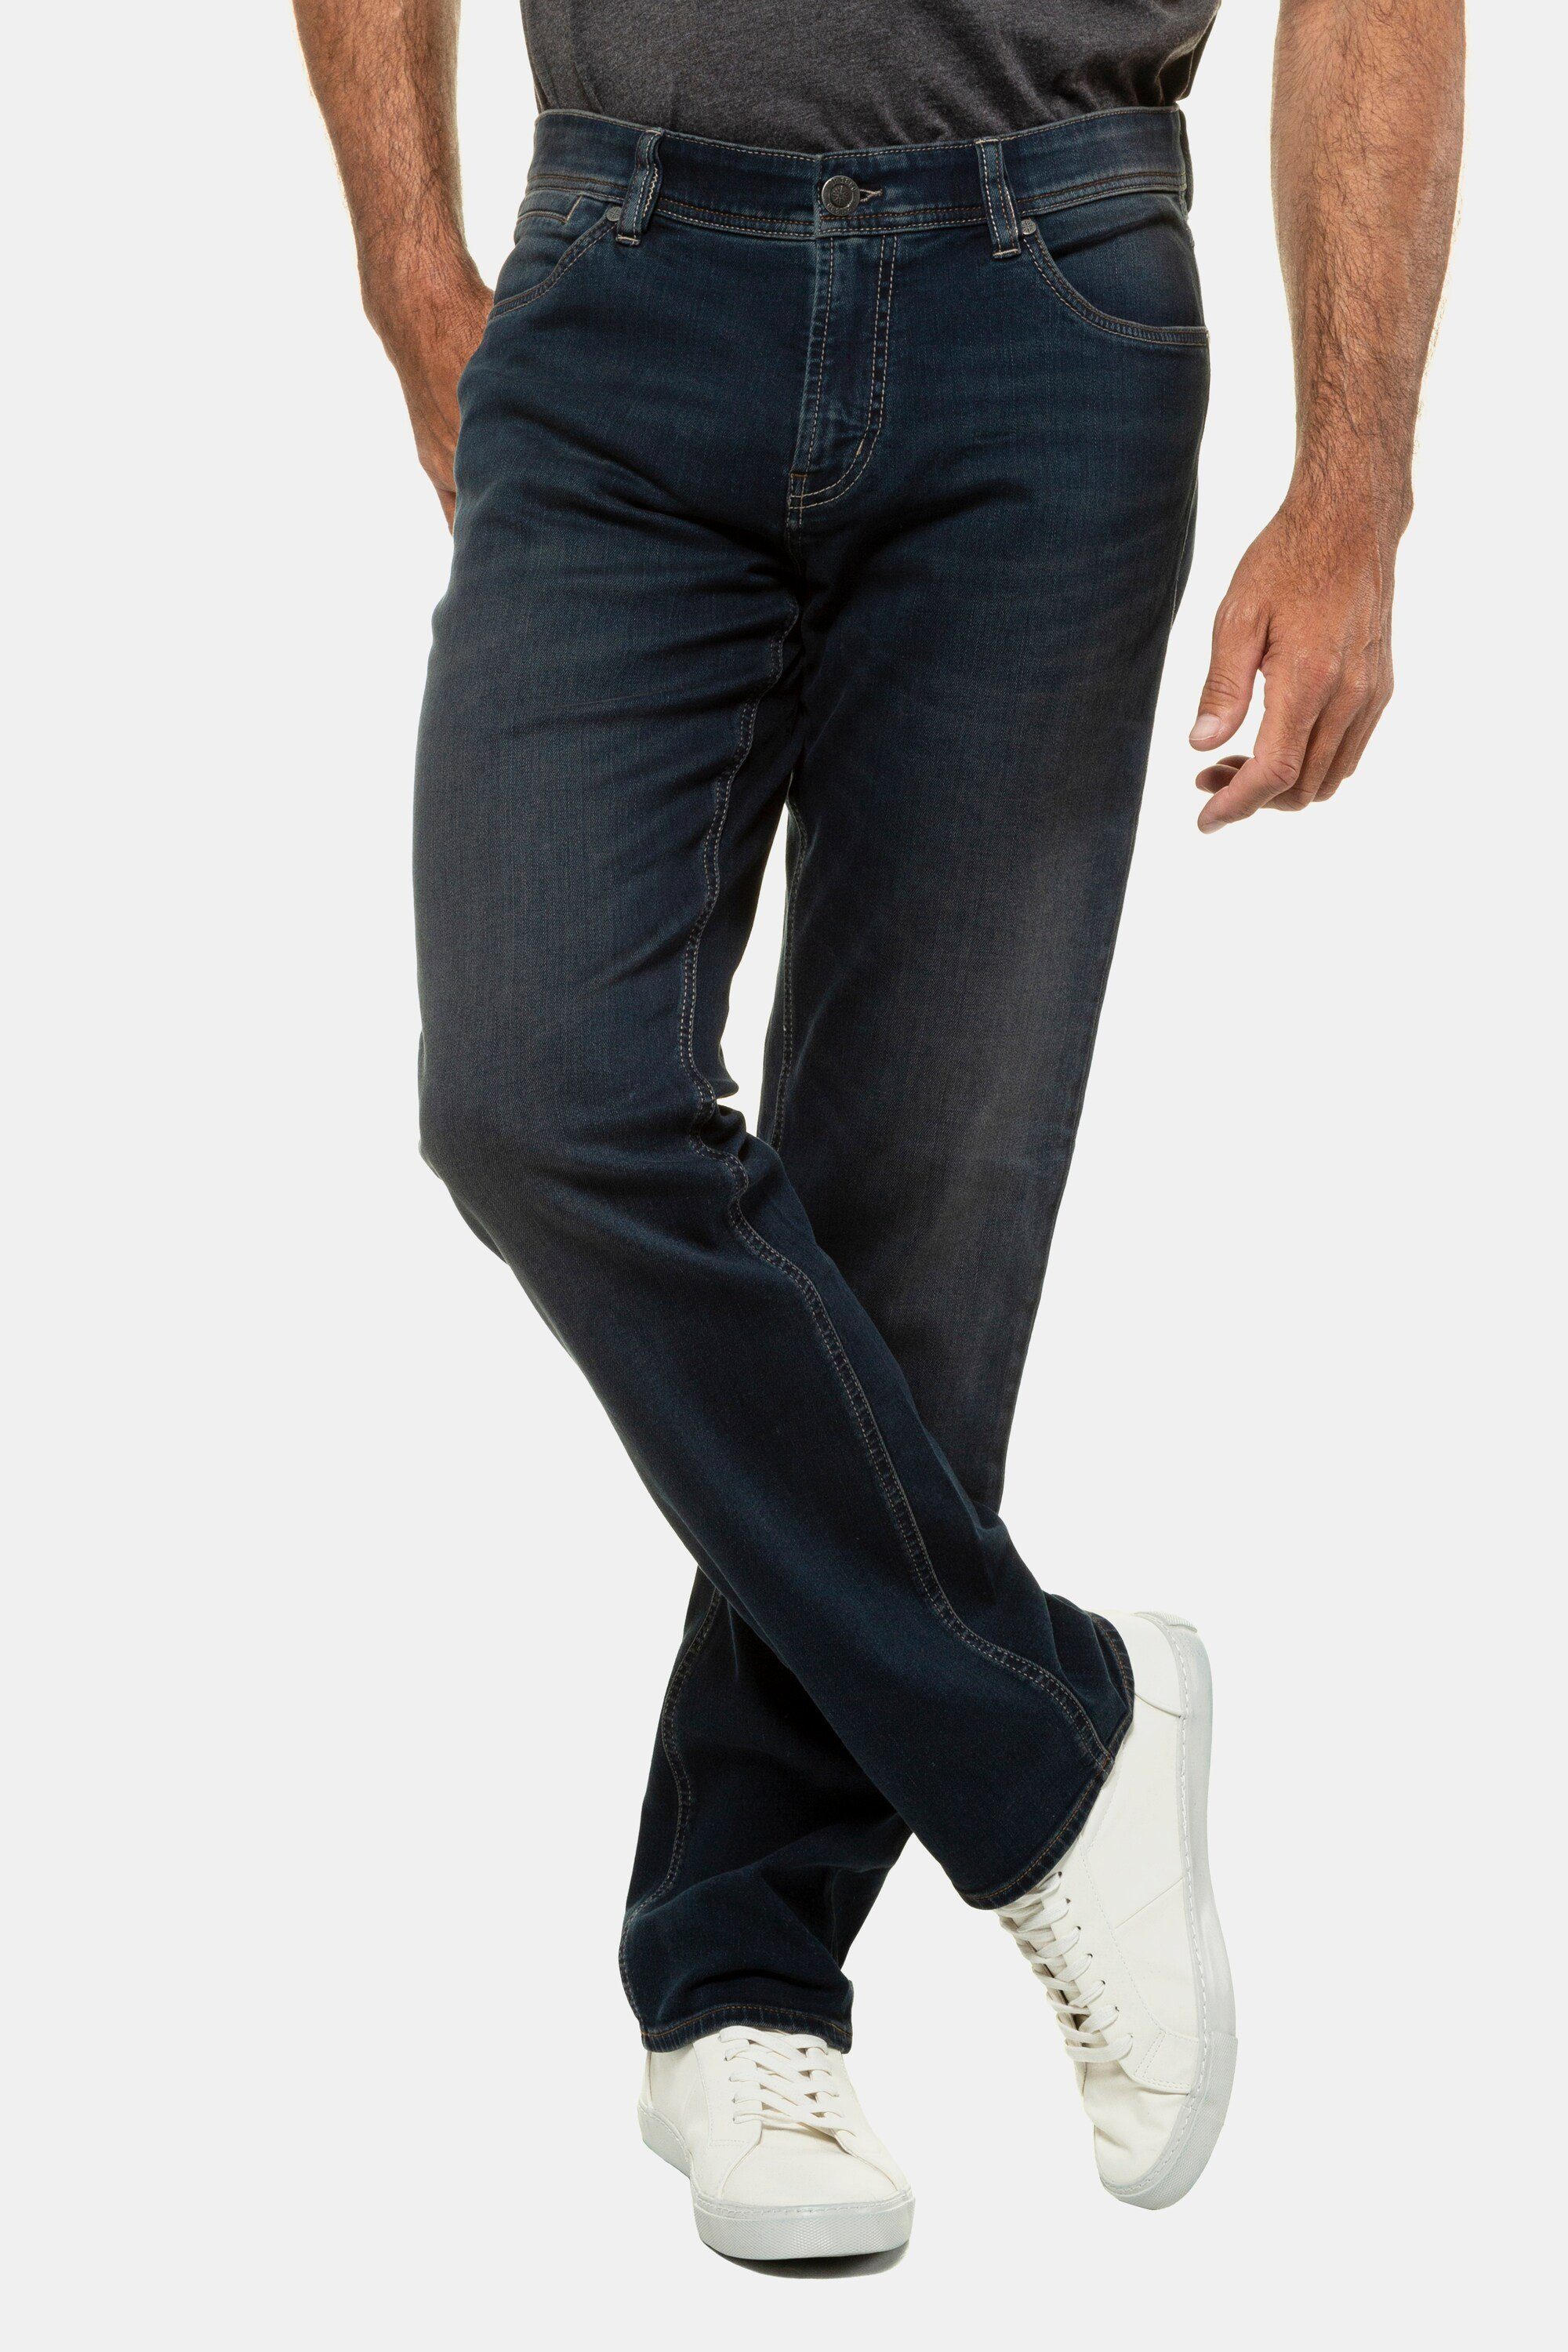 JP1880 Cargohose Jeans Bauchfit Denim bis Gr. 70/35 blue denim | Cargohosen